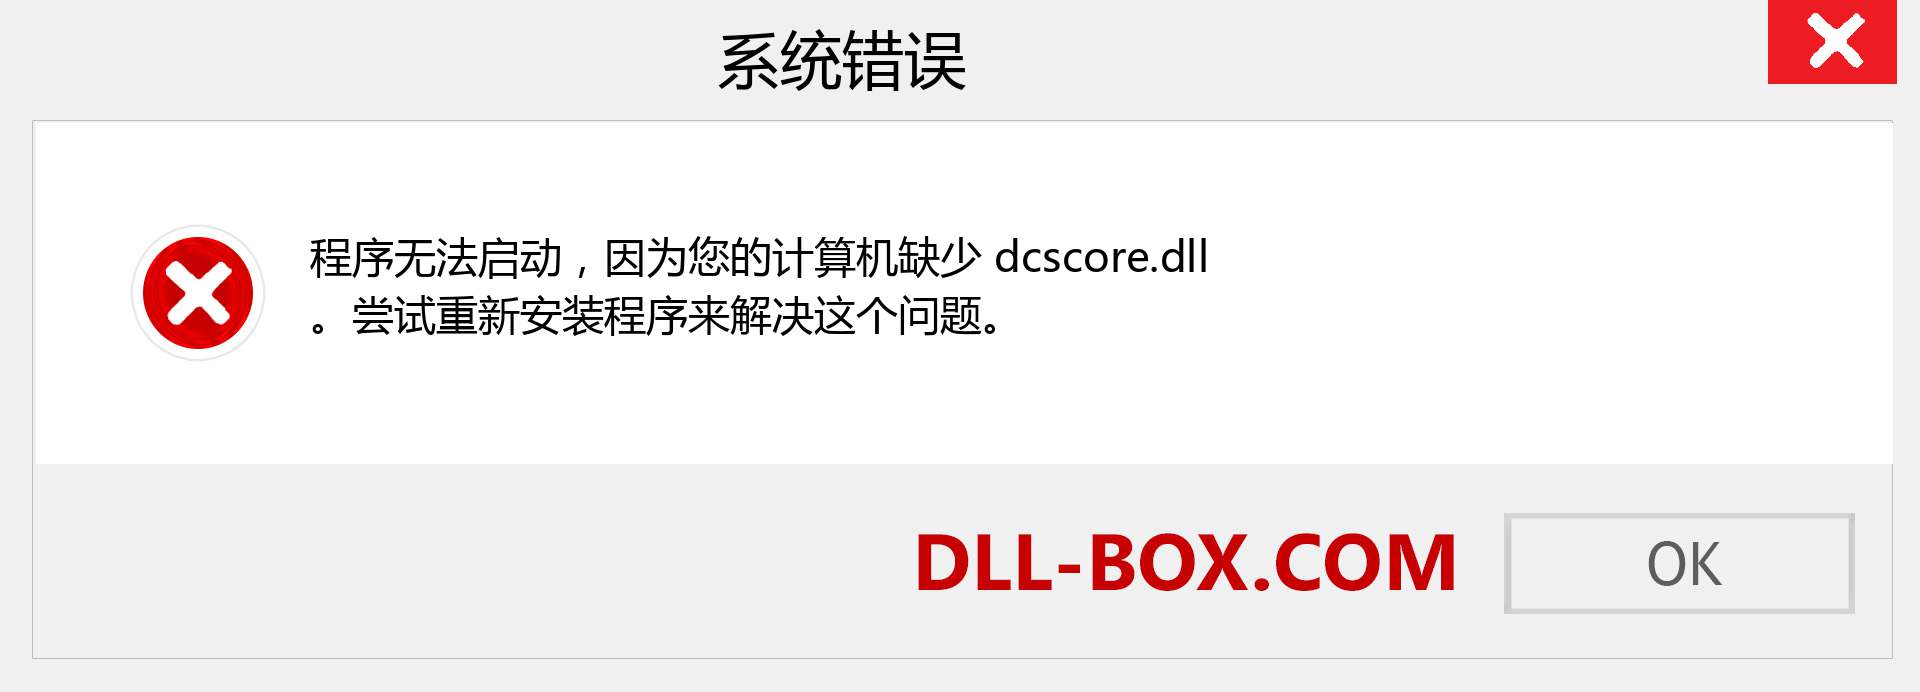 dcscore.dll 文件丢失？。 适用于 Windows 7、8、10 的下载 - 修复 Windows、照片、图像上的 dcscore dll 丢失错误